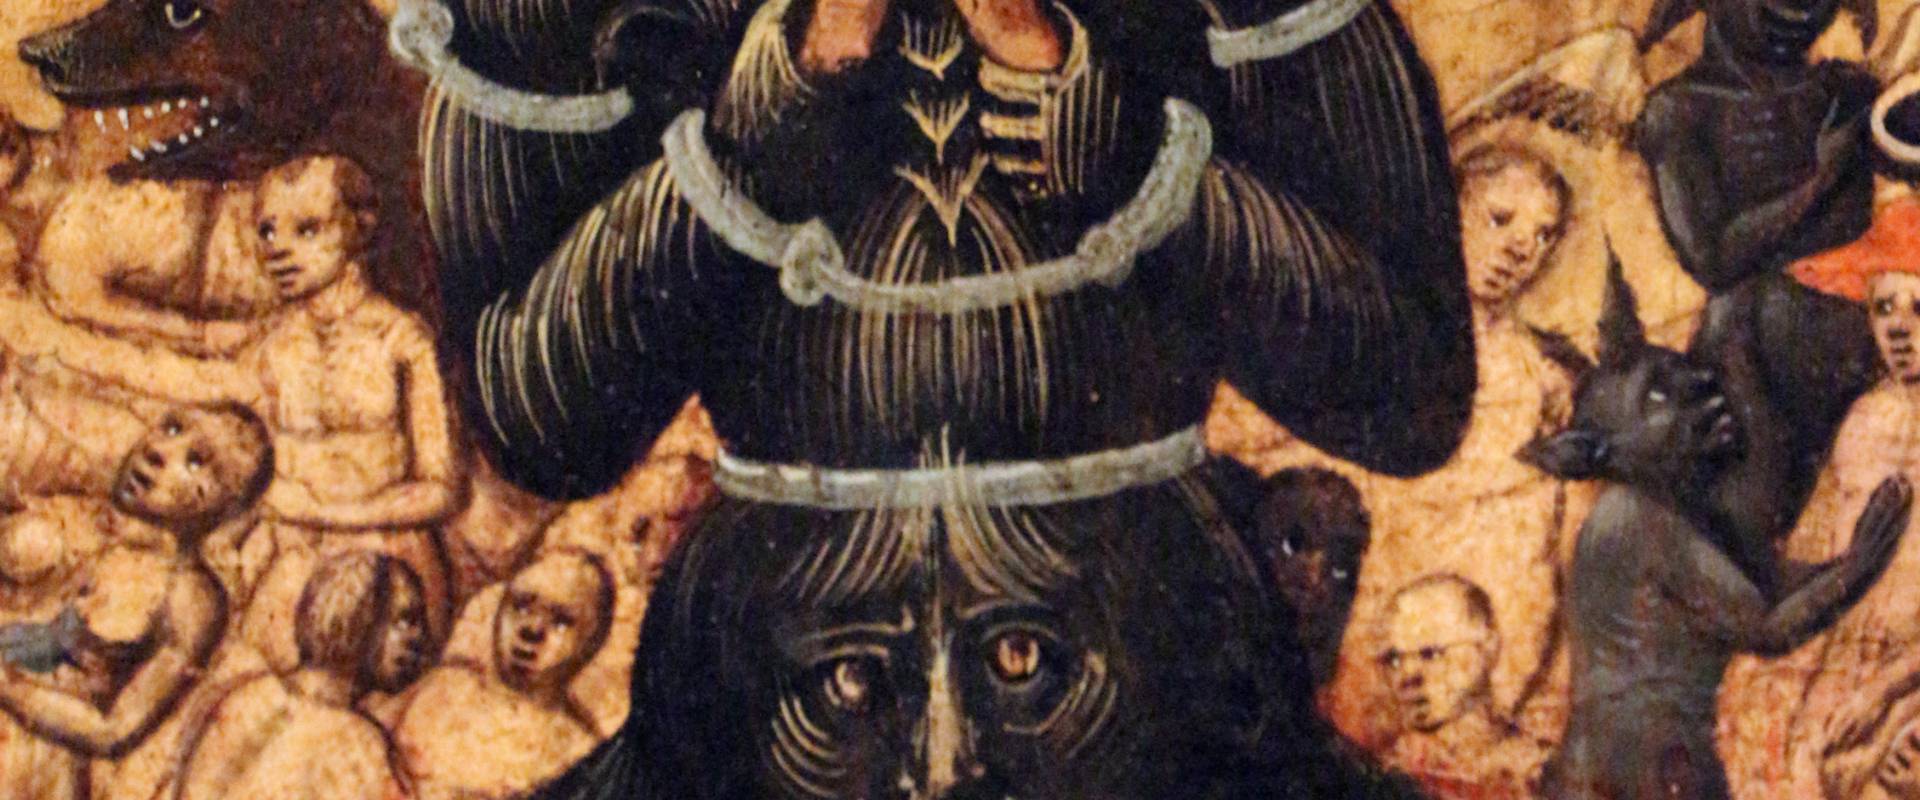 Maestro dell'avicenna, paradiso e inferno, 1435 ca. (bo) 06 diavolo foto di Sailko